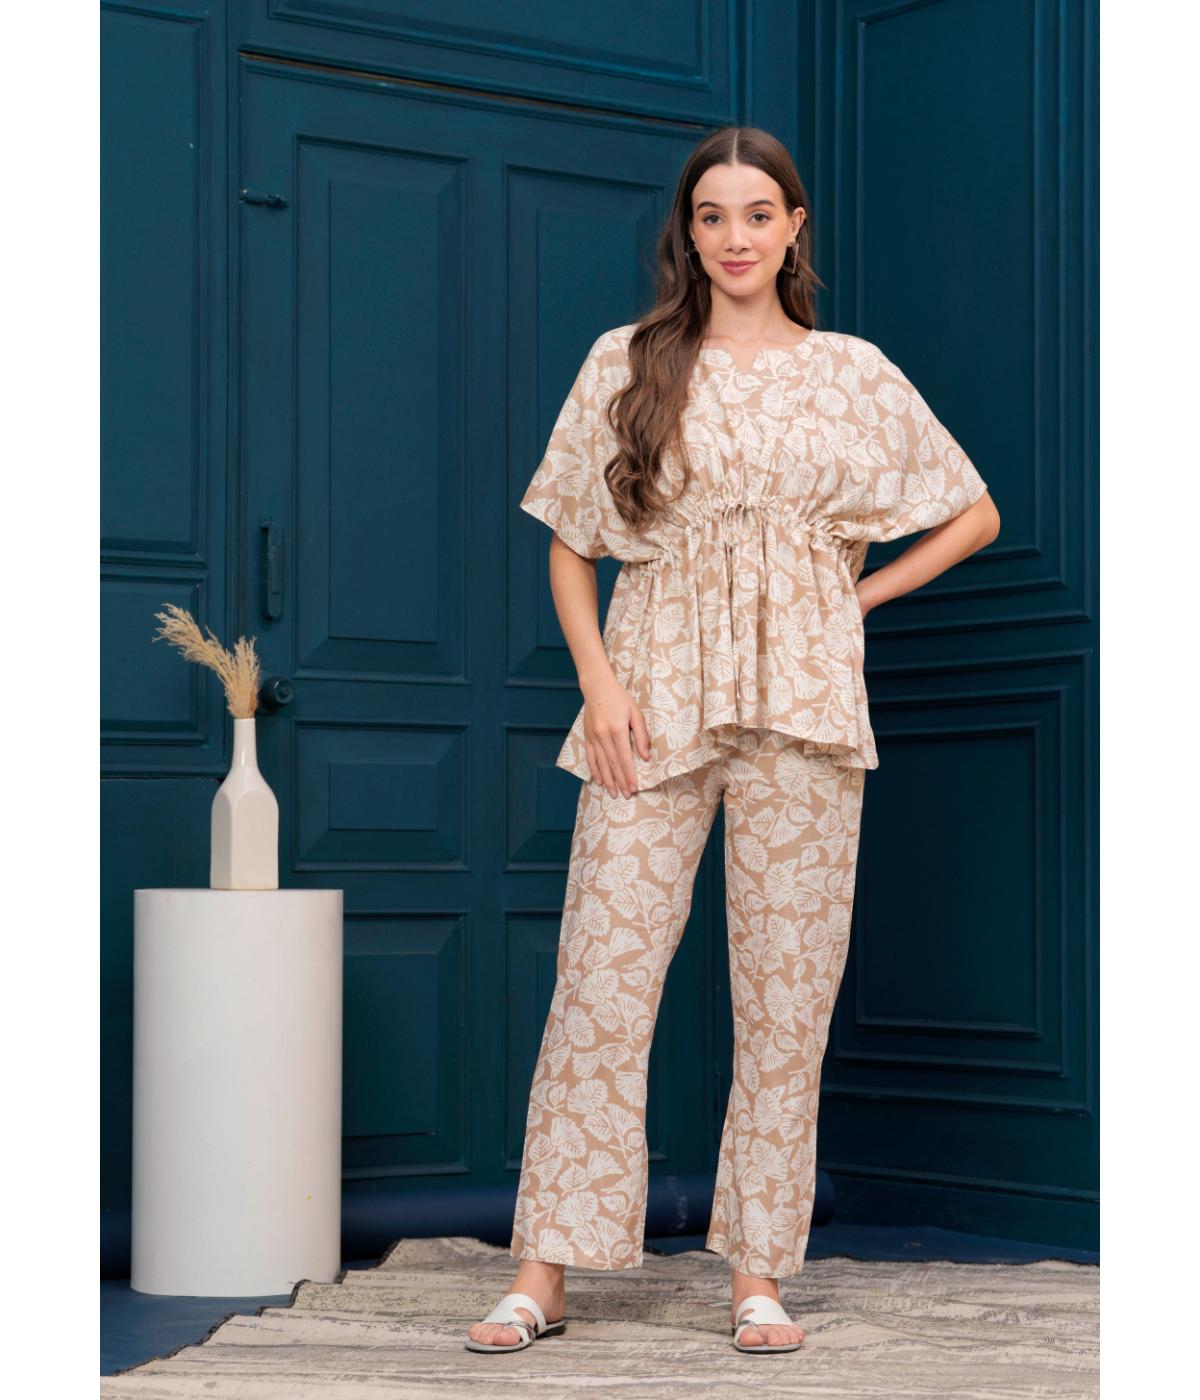 Daevish new Rayon Printed Kaftan Pant Co Ord Set For Women & Girl's